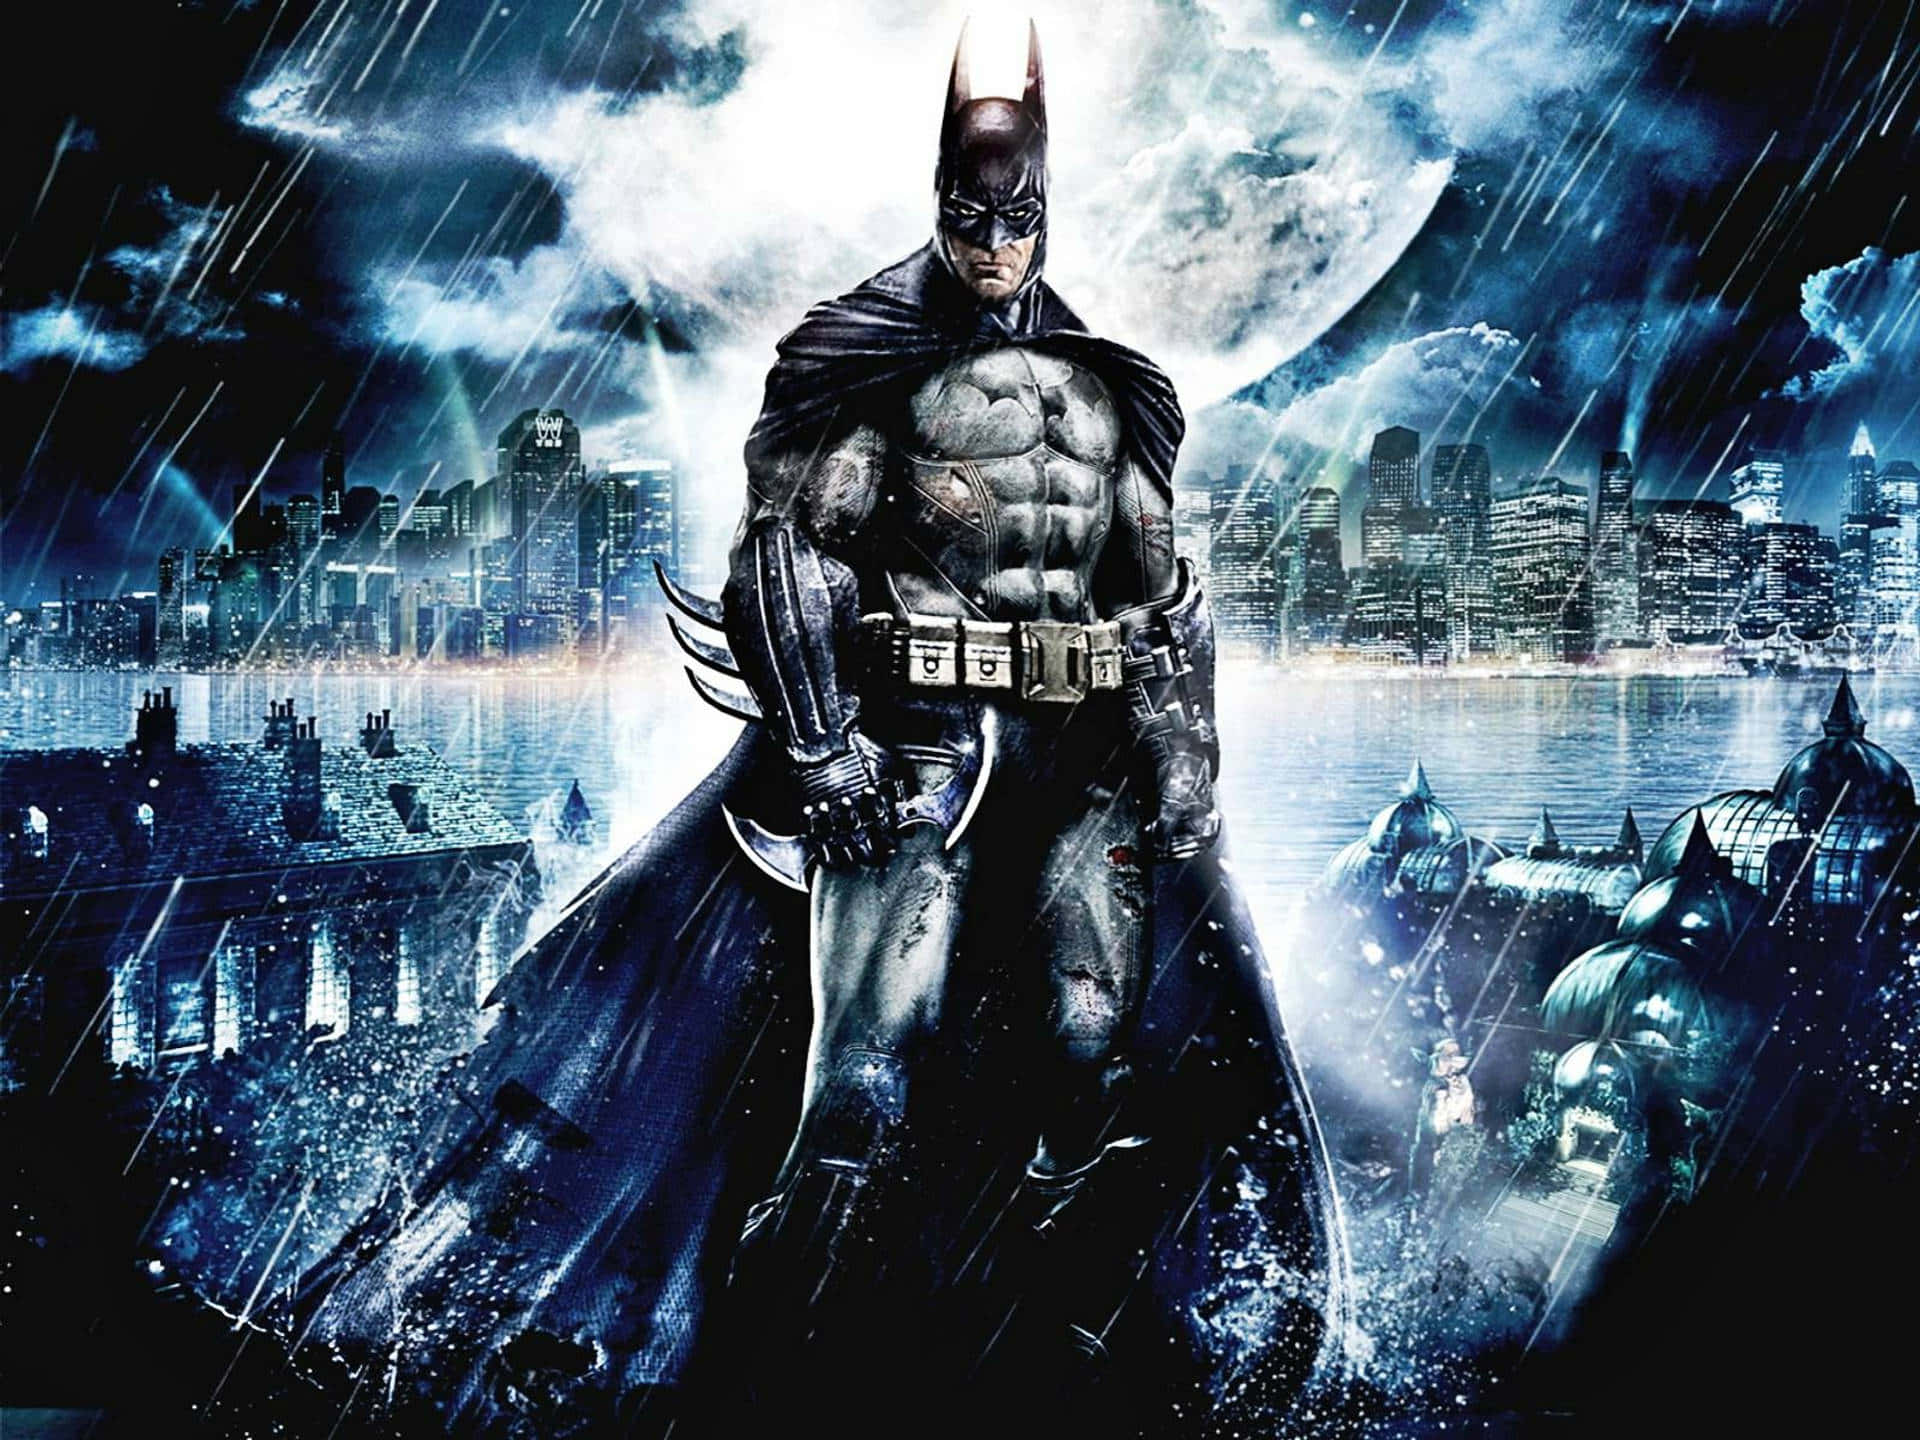 Sumérgeteen El Impresionante Mundo De Batman. Fondo de pantalla